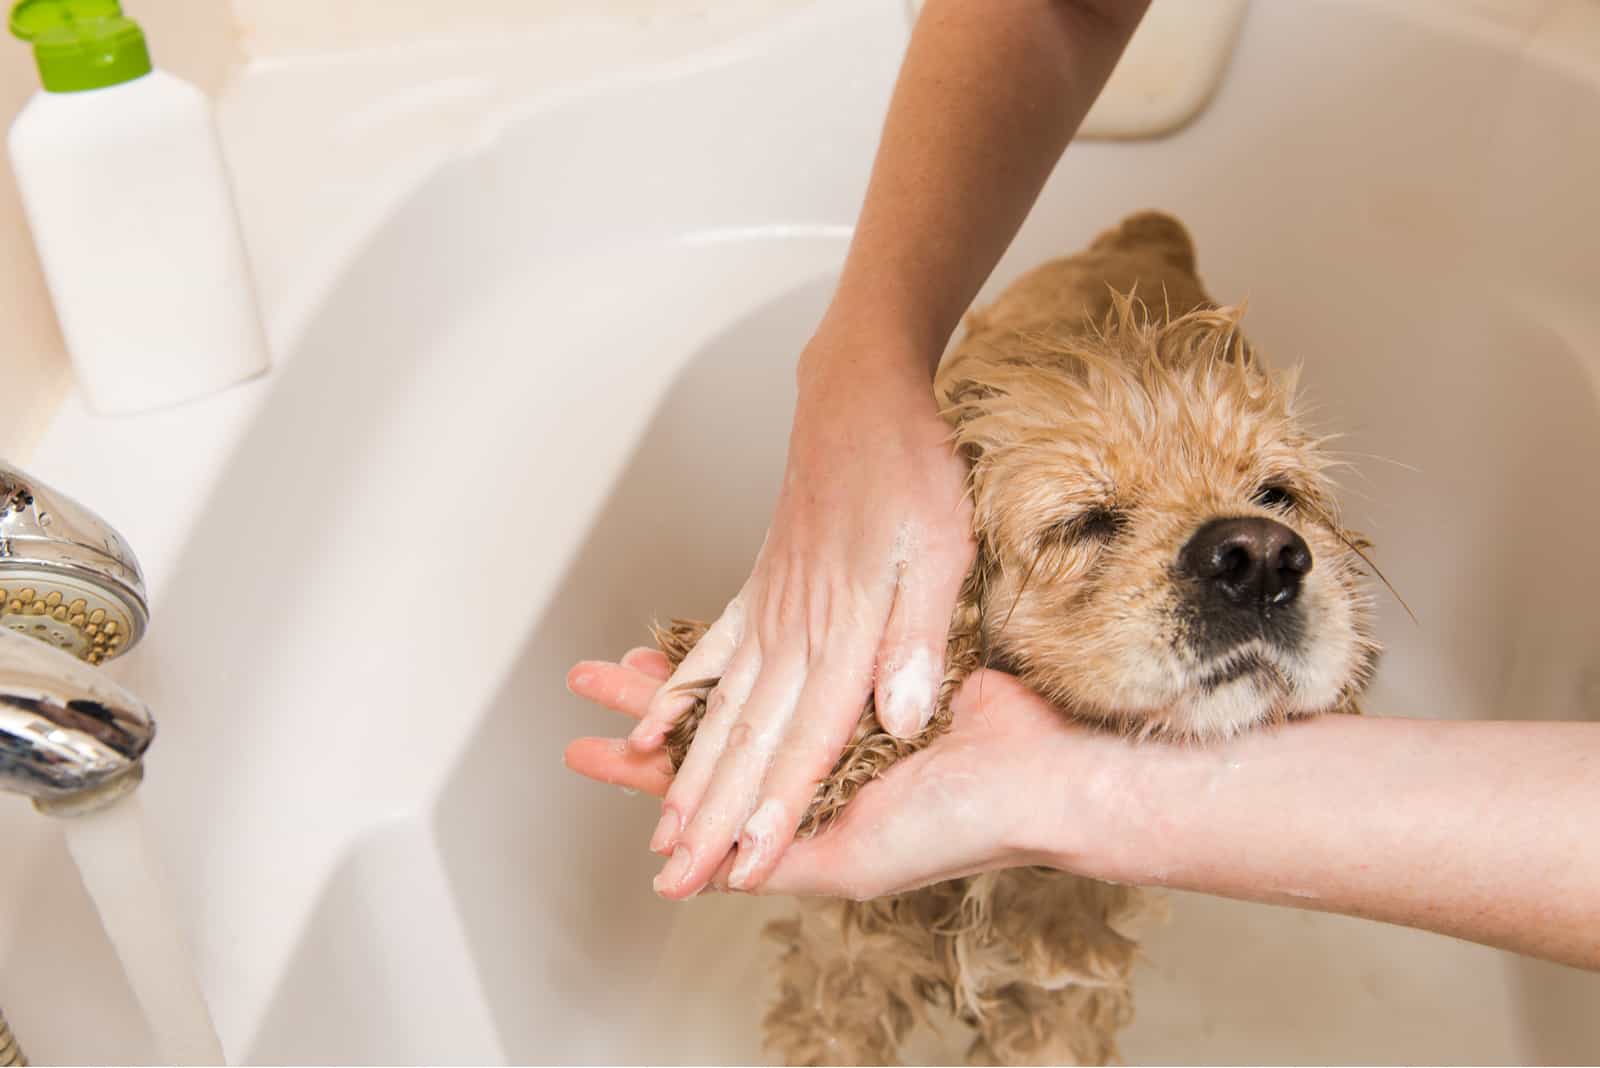 Eine Frau badet einen kleinen Hund in einer Wanne